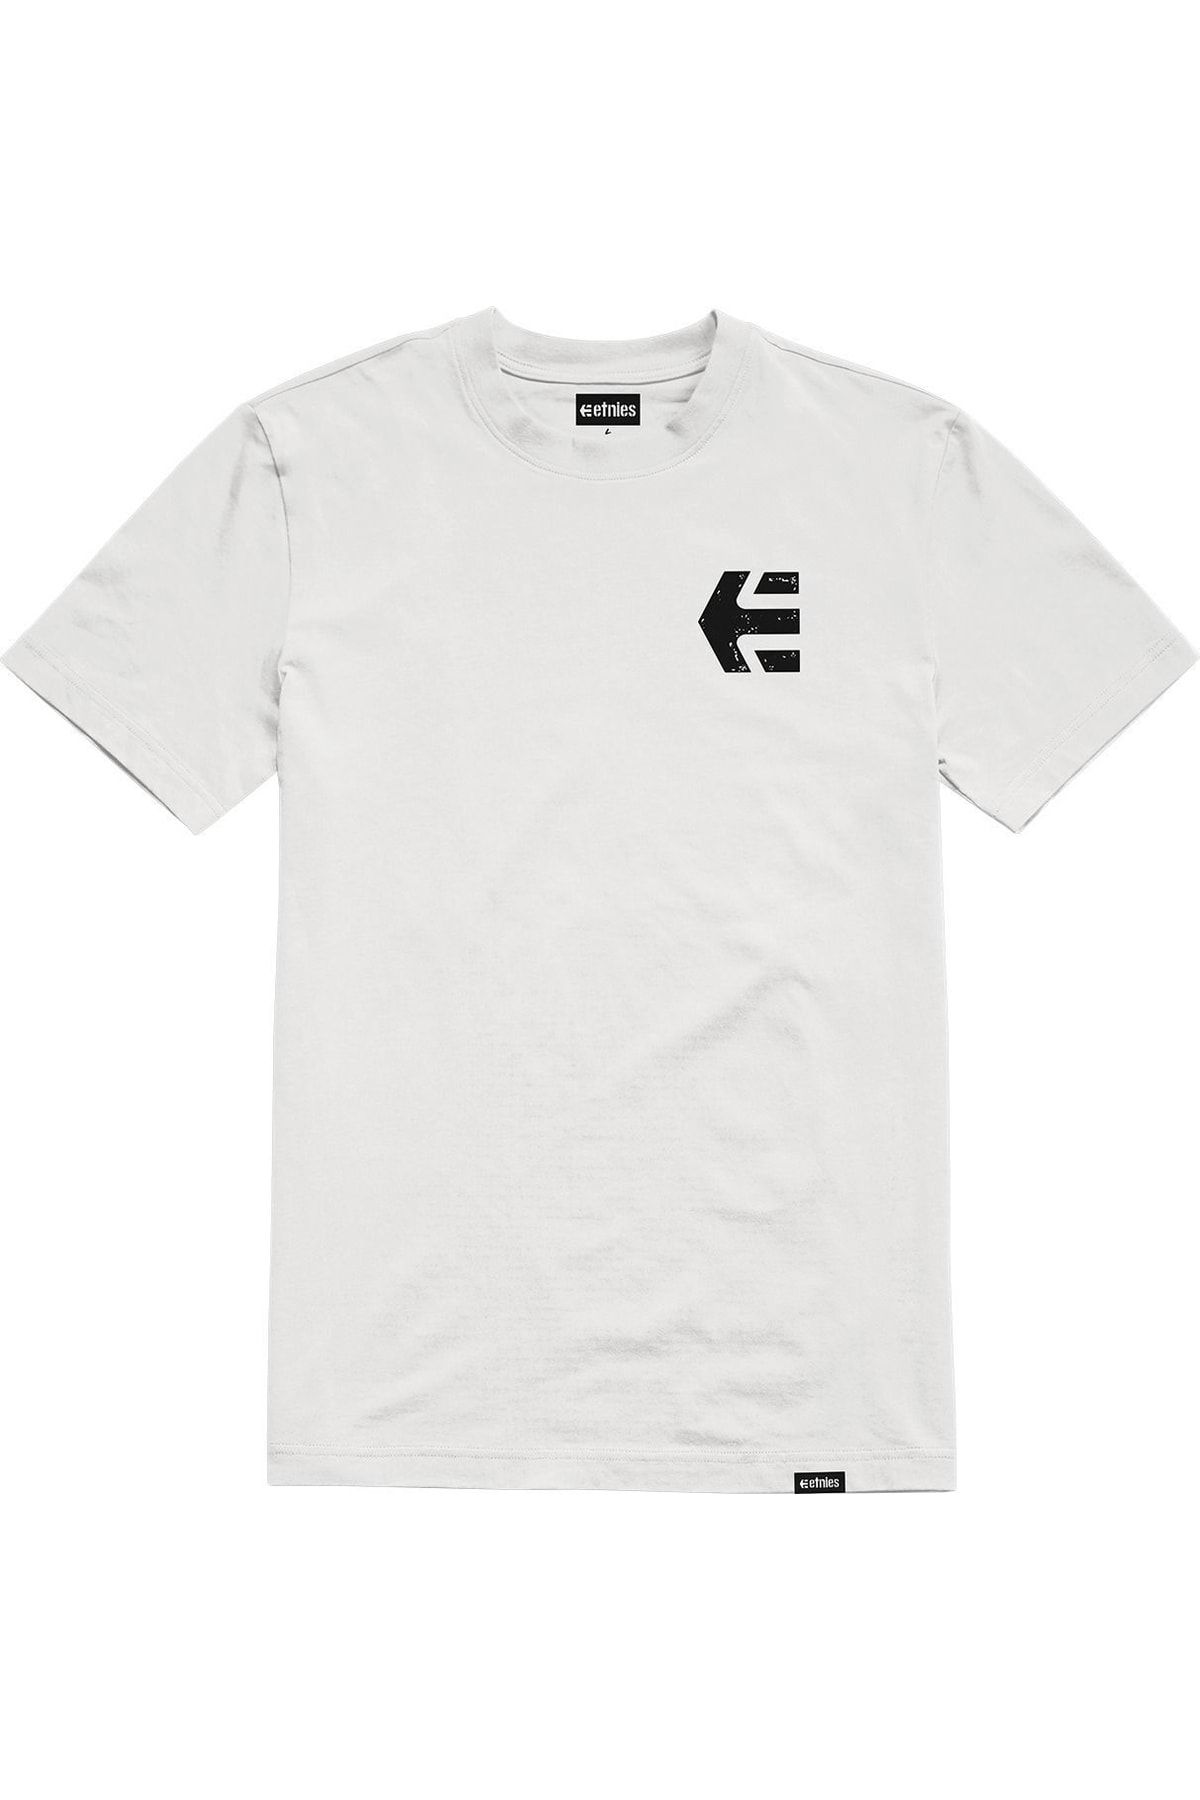 Etnies Skate Co White Black Tişört